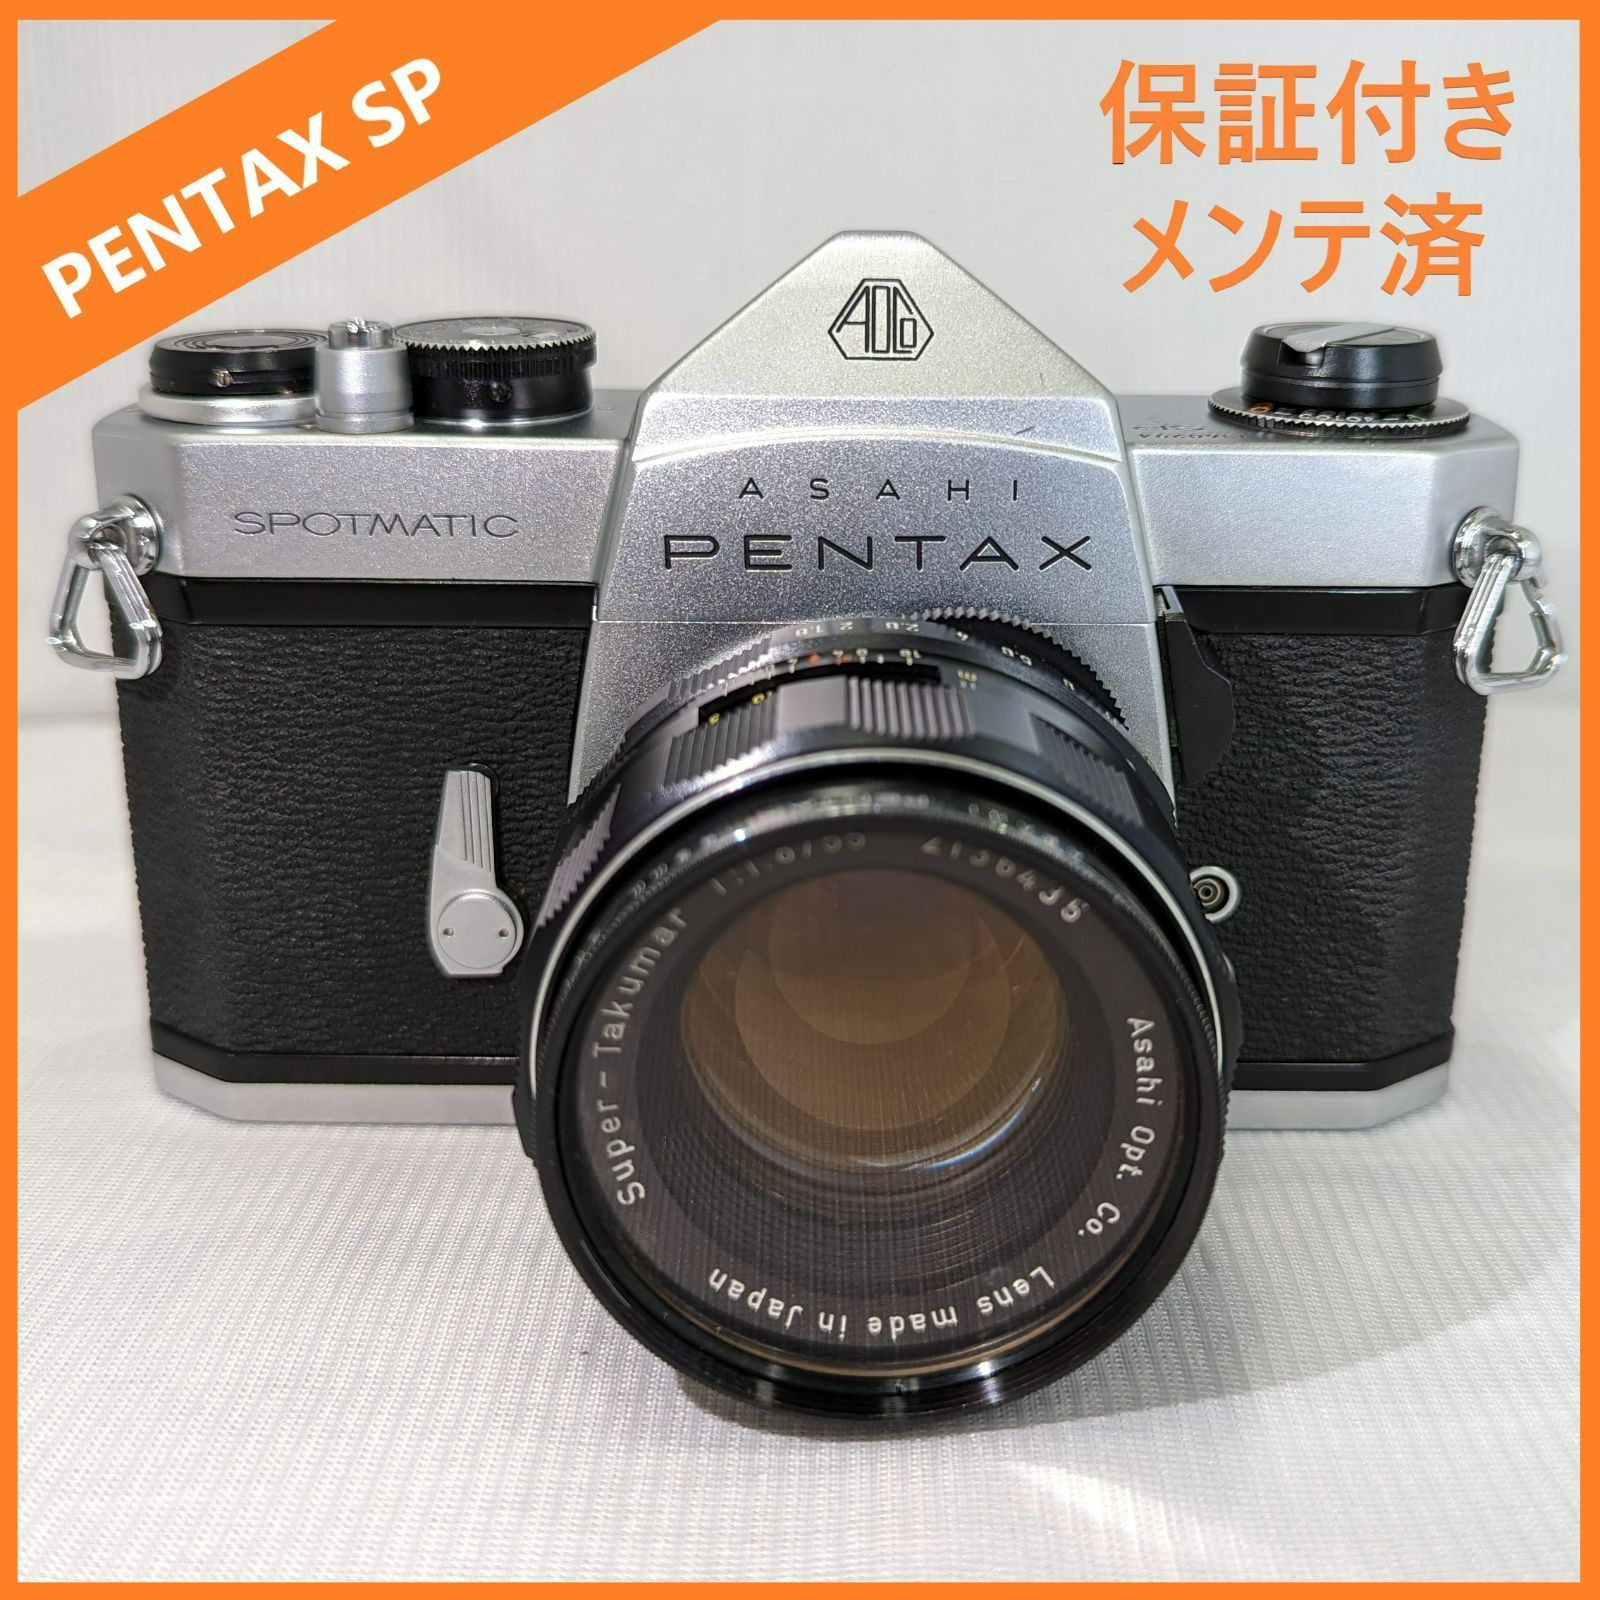 きれい SP PENTAX 55mmf1.8 +スーパータクマー  完動品 - 6